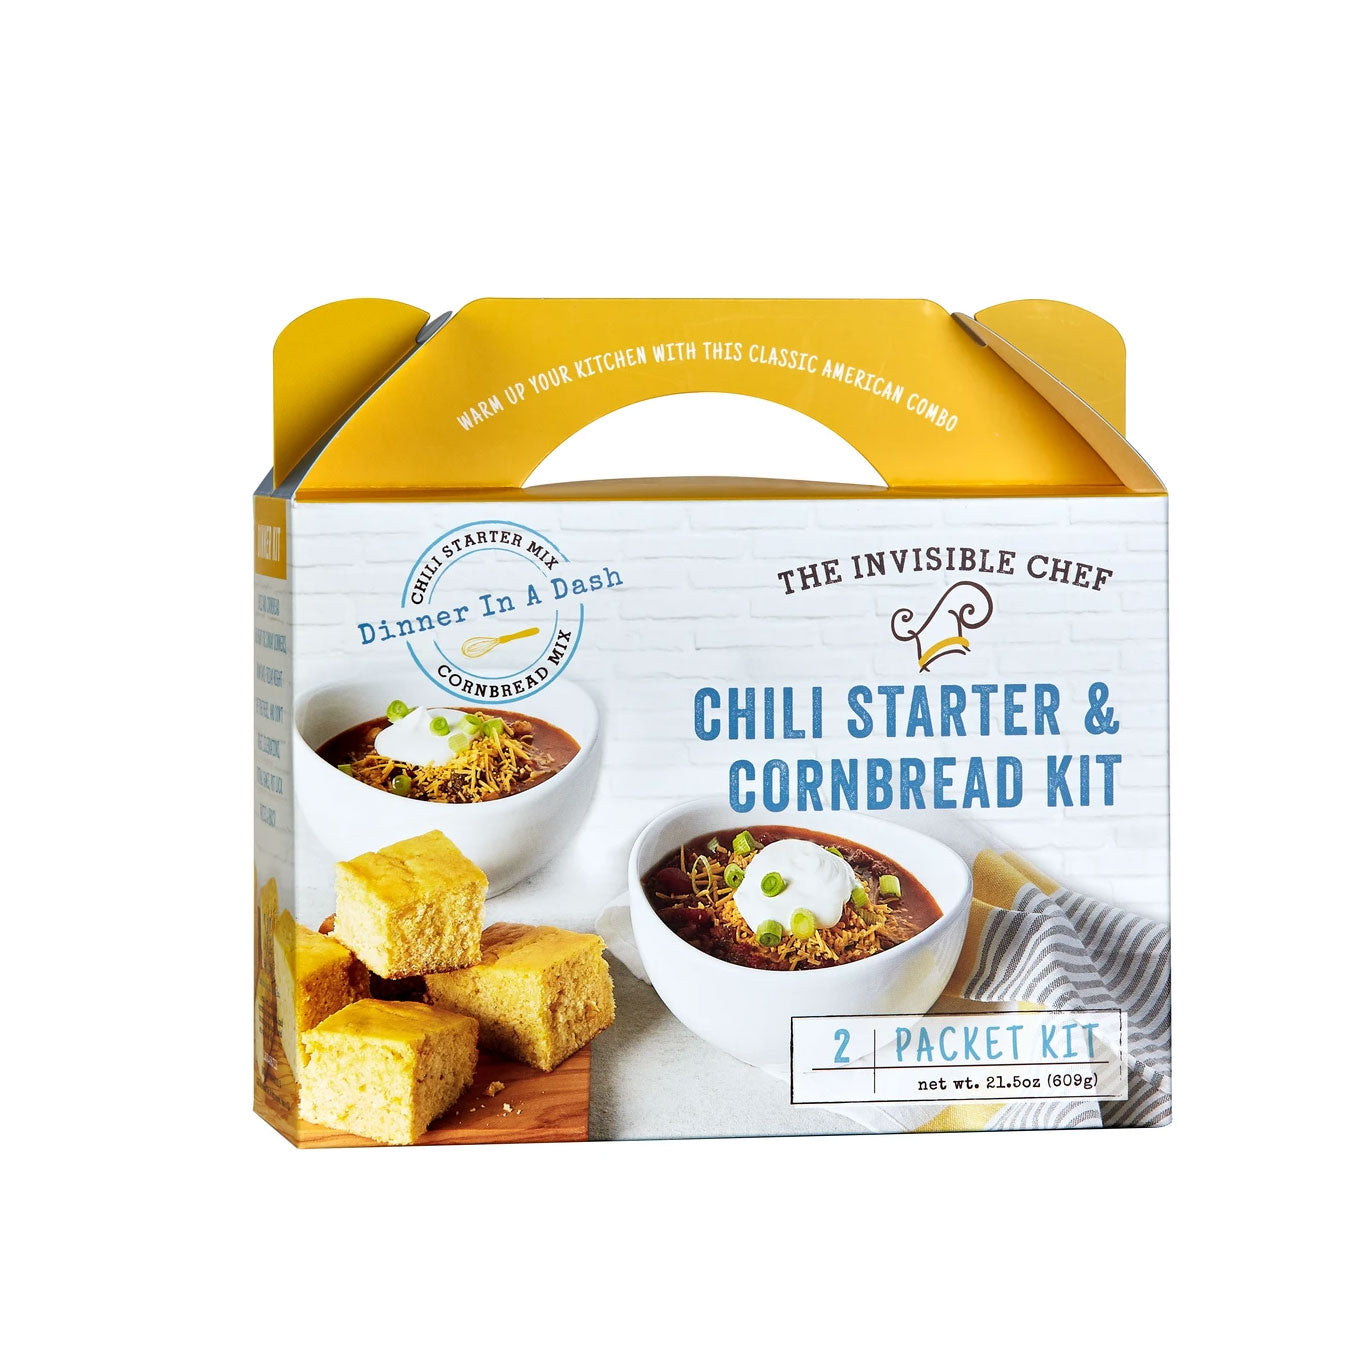 Dinner In A Dash - Chili Starter & Cornbread Baking Kit